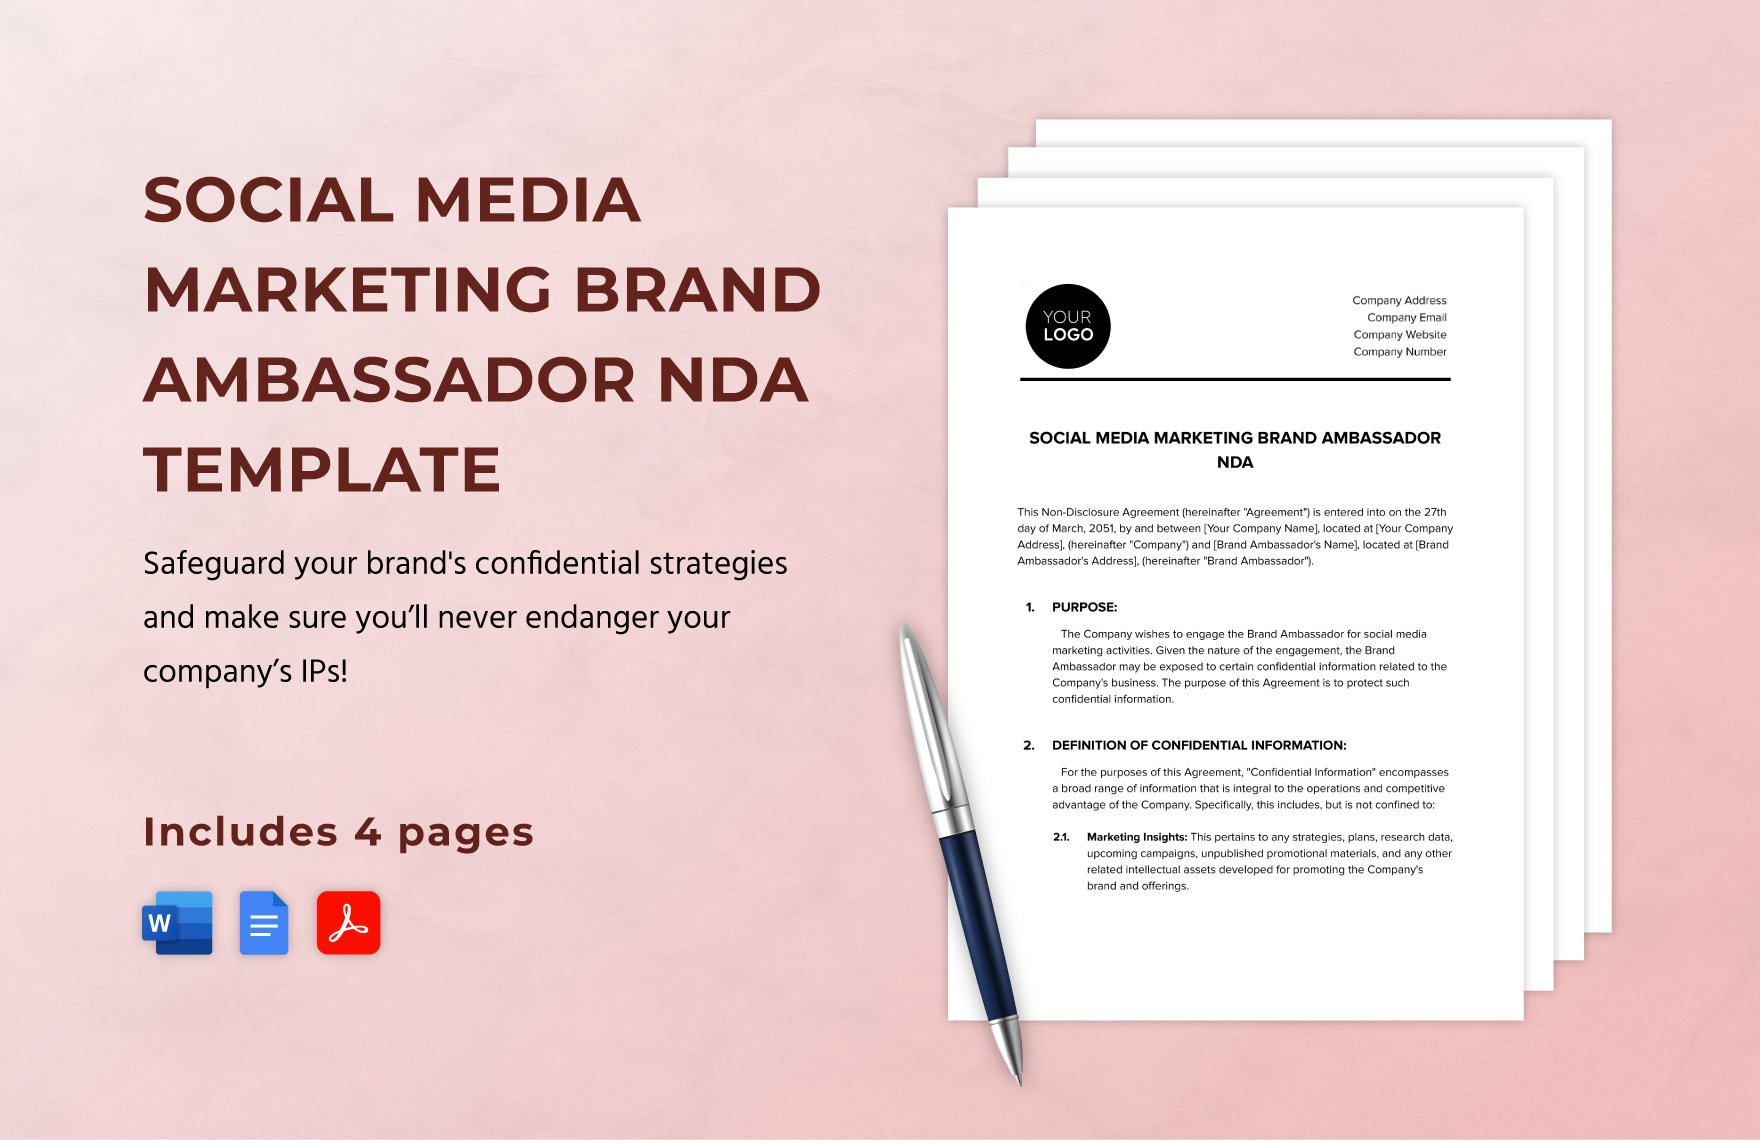 Social Media Marketing Brand Ambassador NDA Template